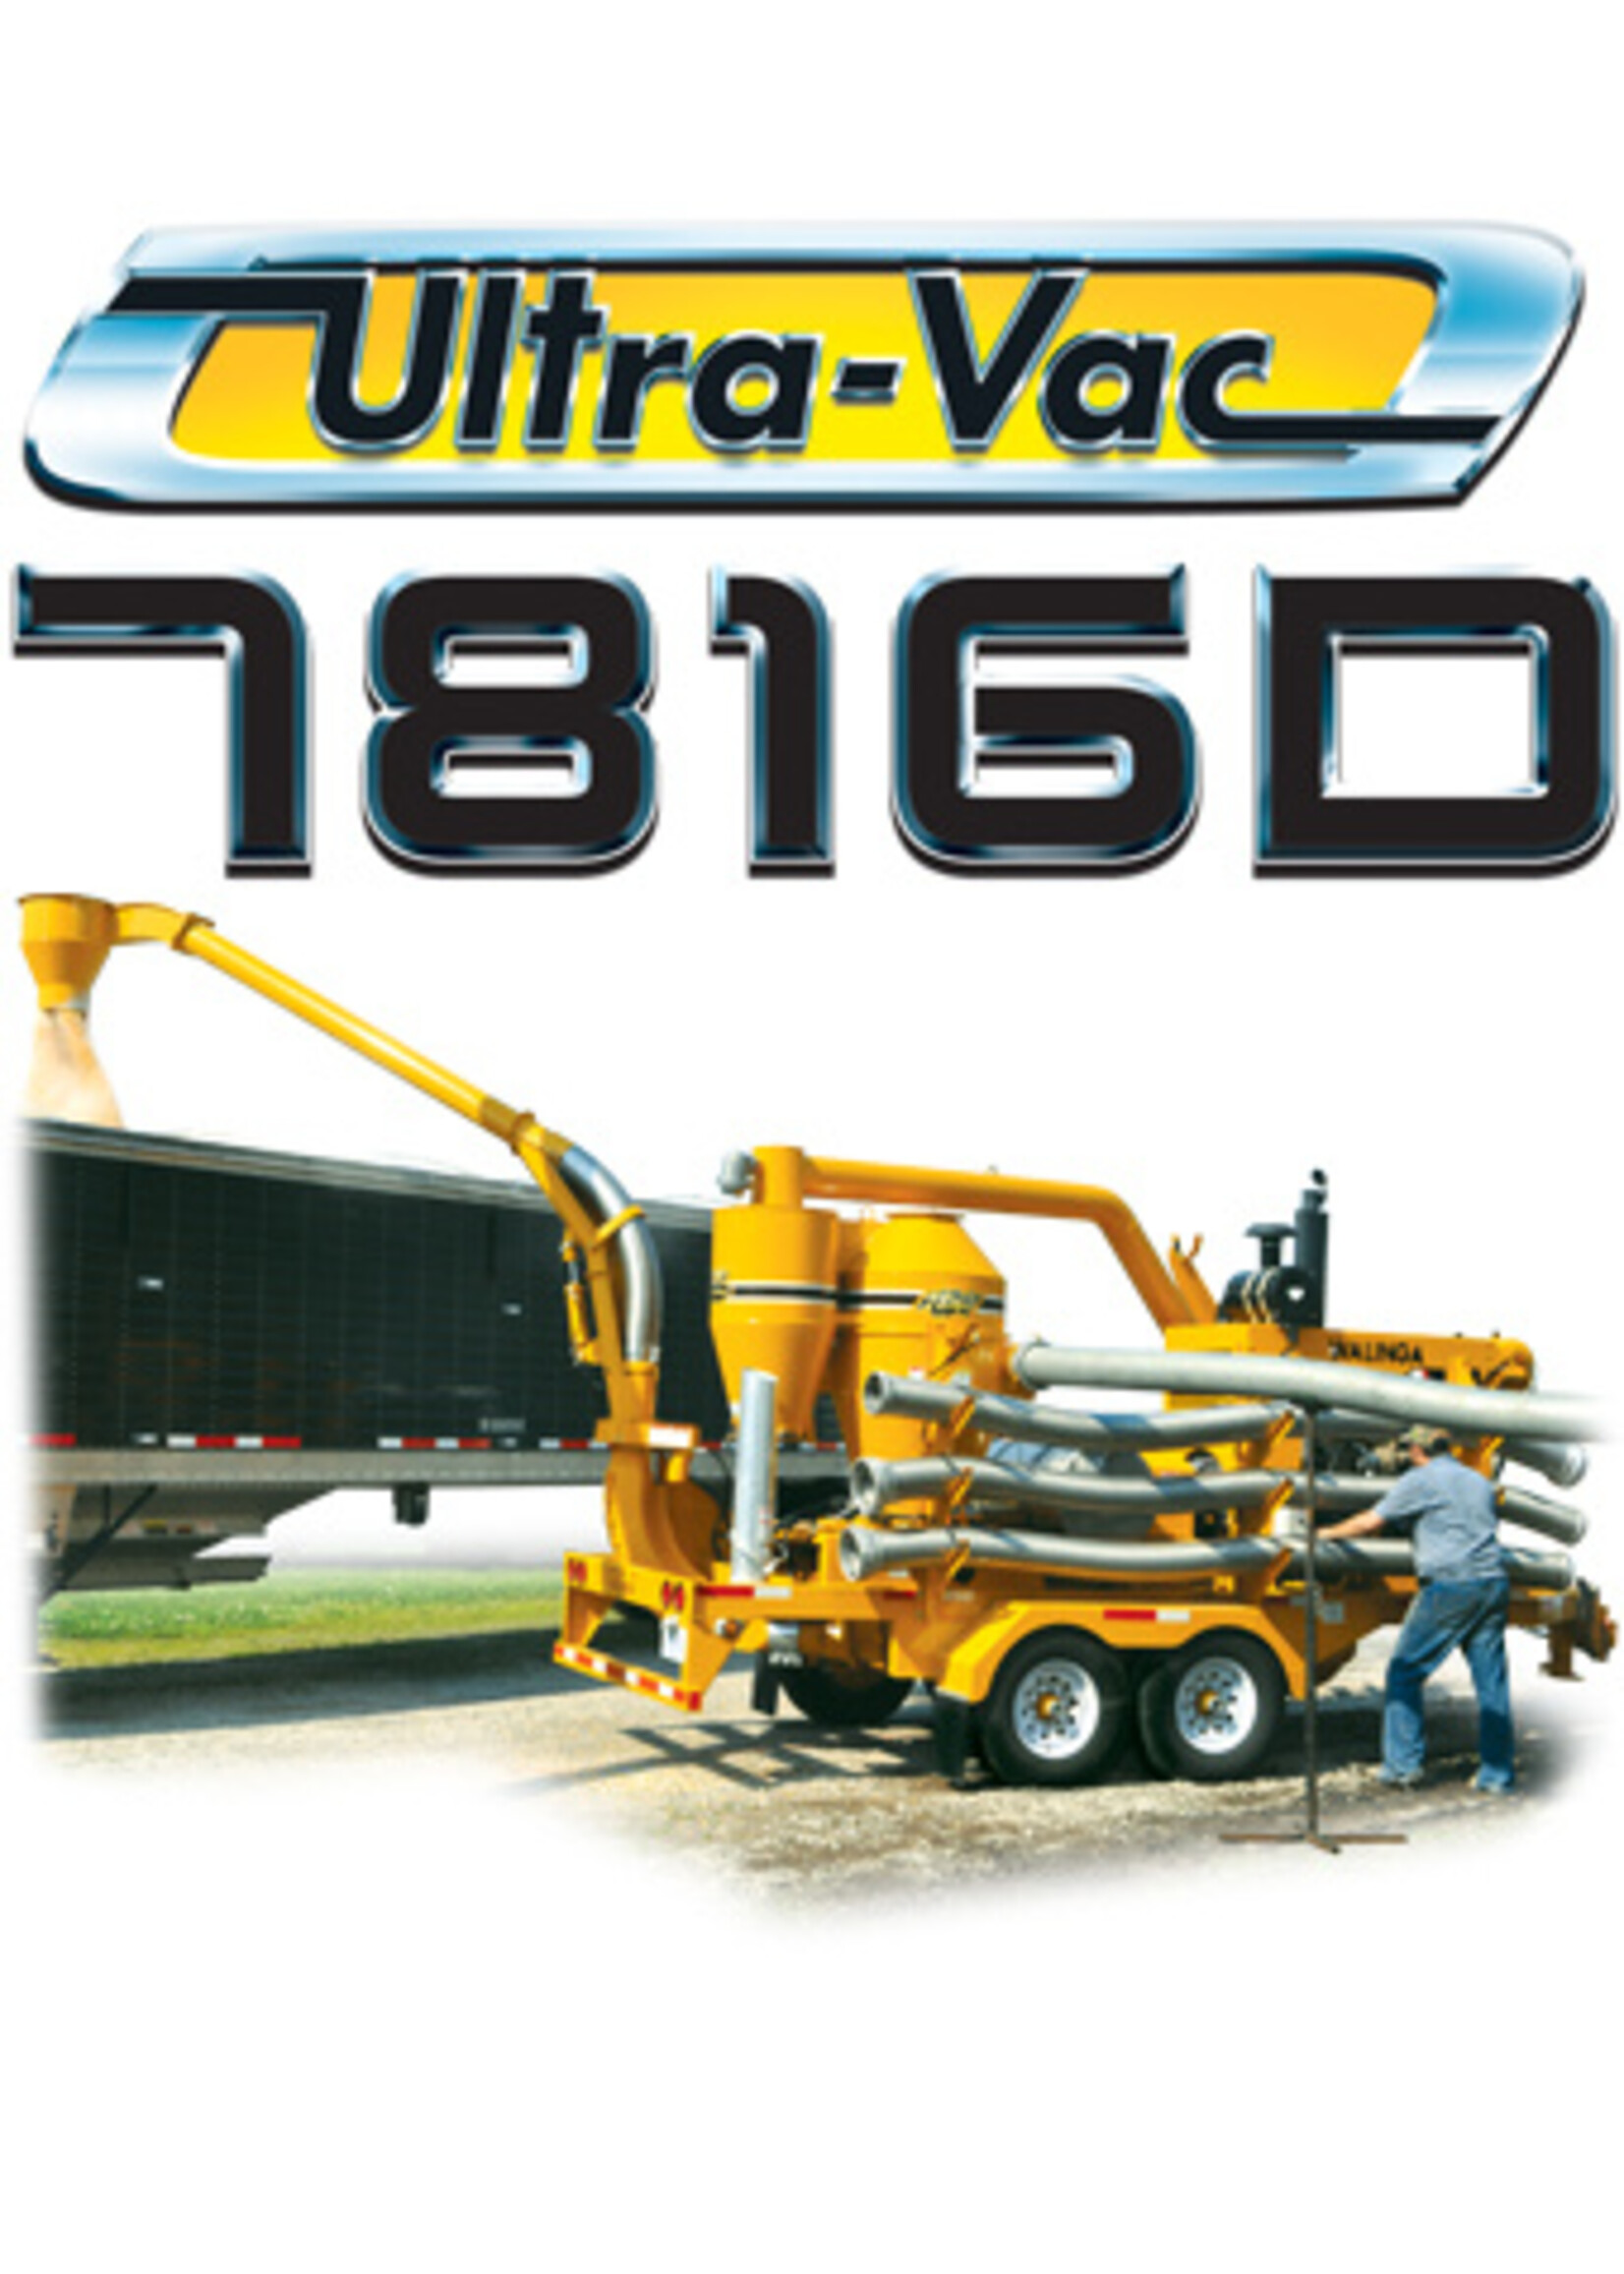 Ultra-Vac 7816D